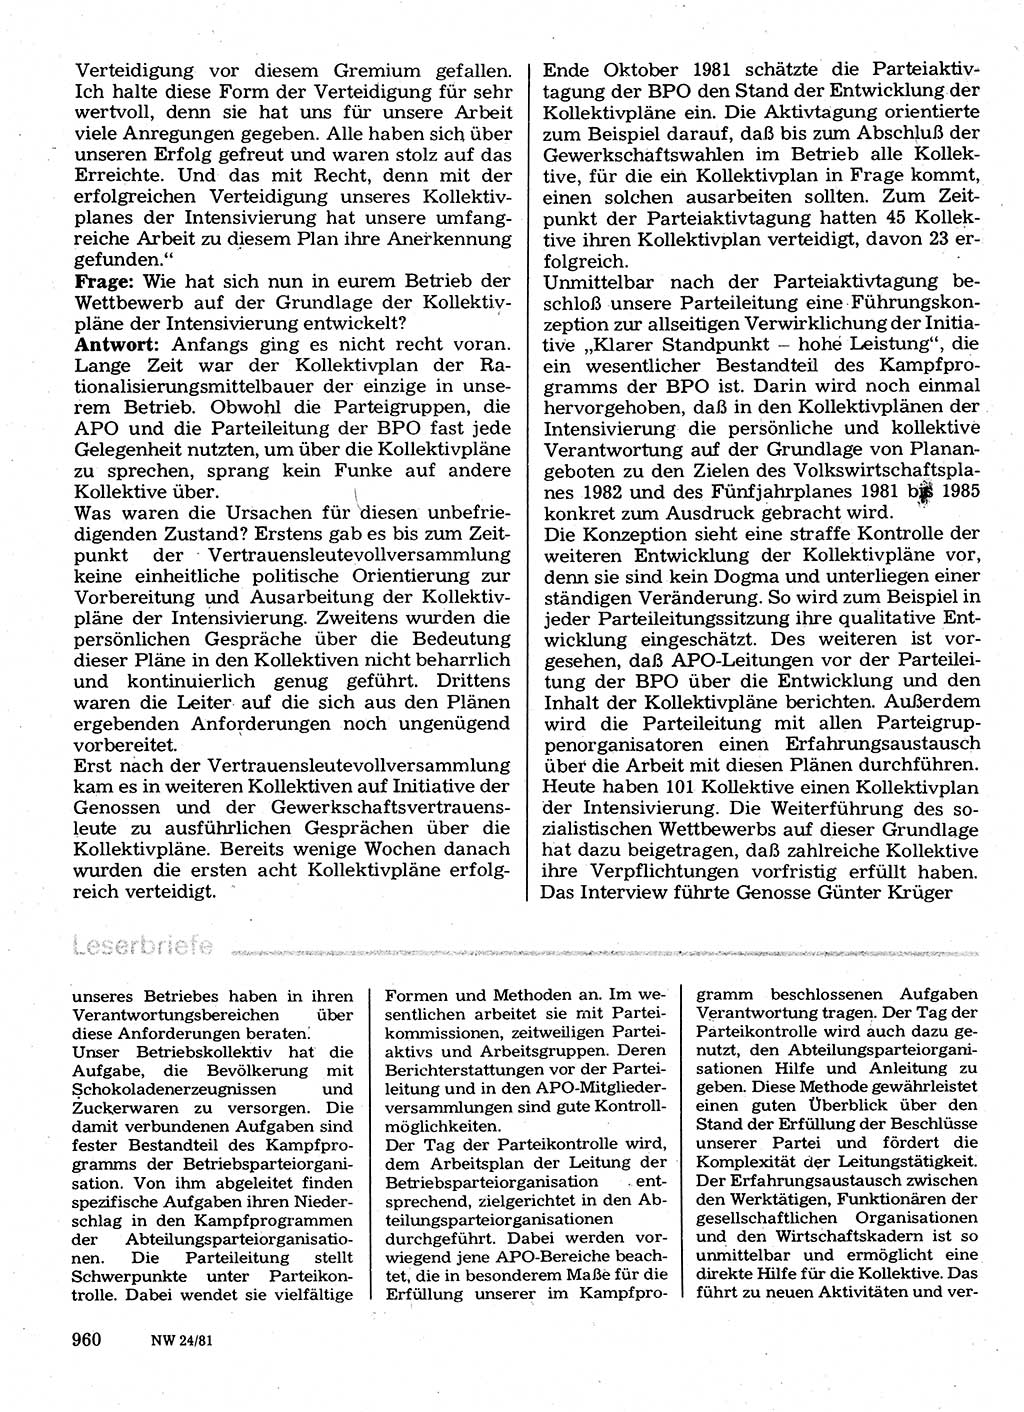 Neuer Weg (NW), Organ des Zentralkomitees (ZK) der SED (Sozialistische Einheitspartei Deutschlands) für Fragen des Parteilebens, 36. Jahrgang [Deutsche Demokratische Republik (DDR)] 1981, Seite 960 (NW ZK SED DDR 1981, S. 960)